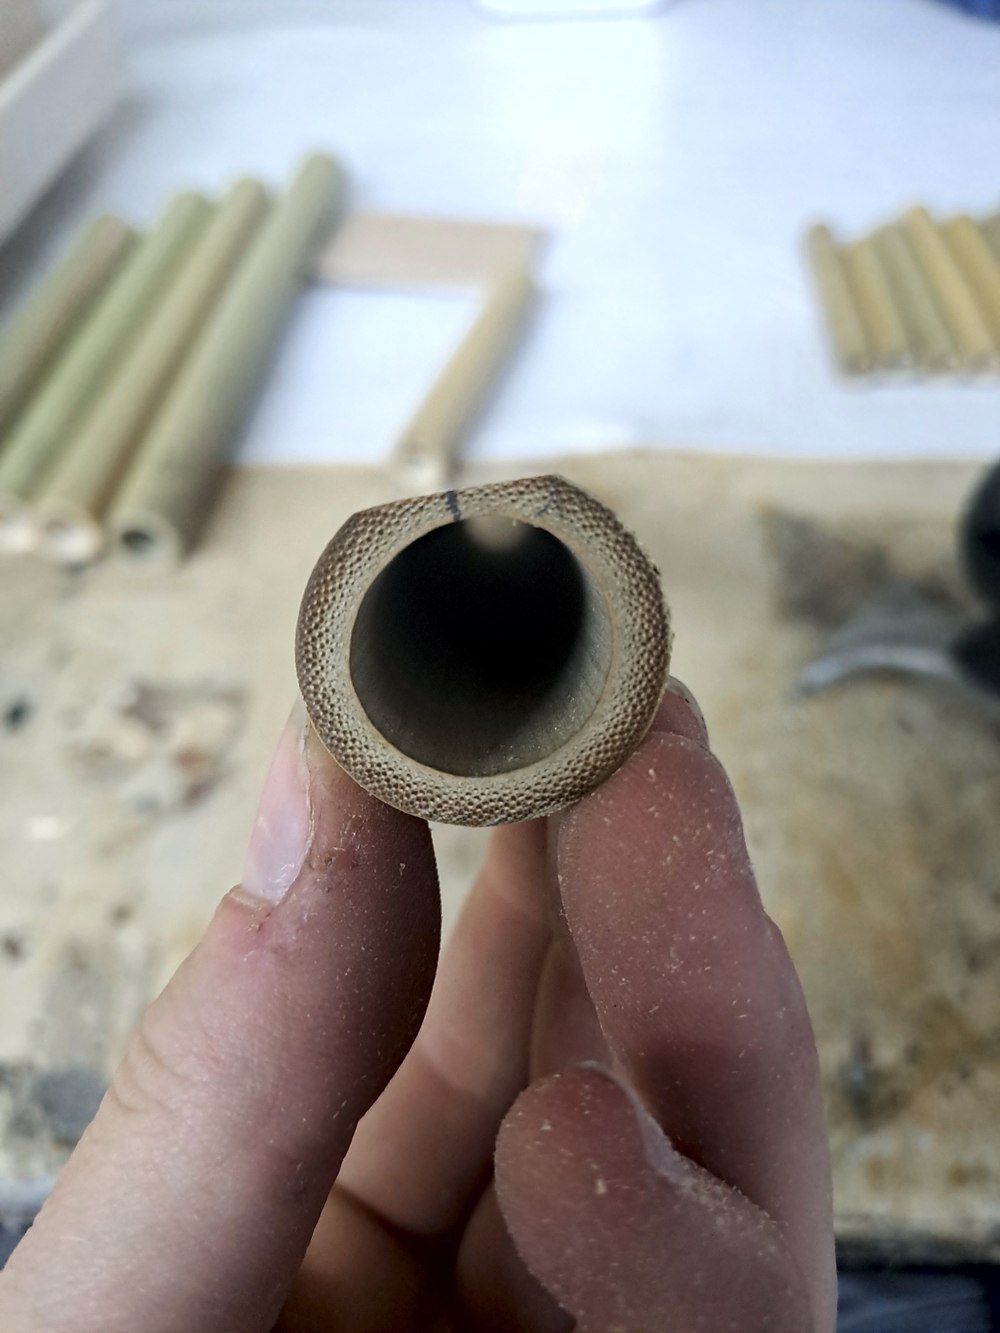 Einseitig geschliffenes Bambusrohr zur Verarbeitung zur Panflöte